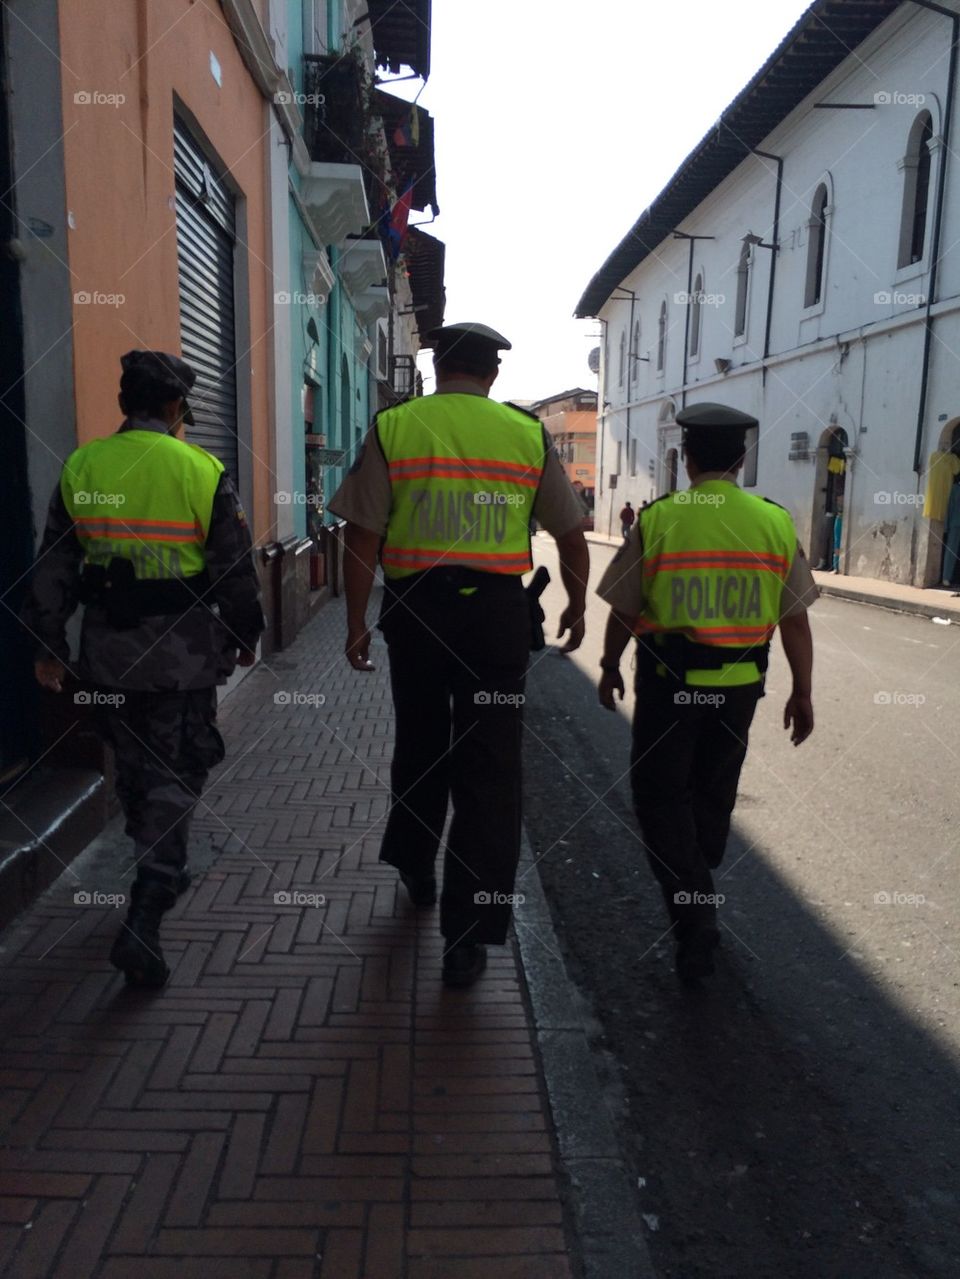 Policia in Quito